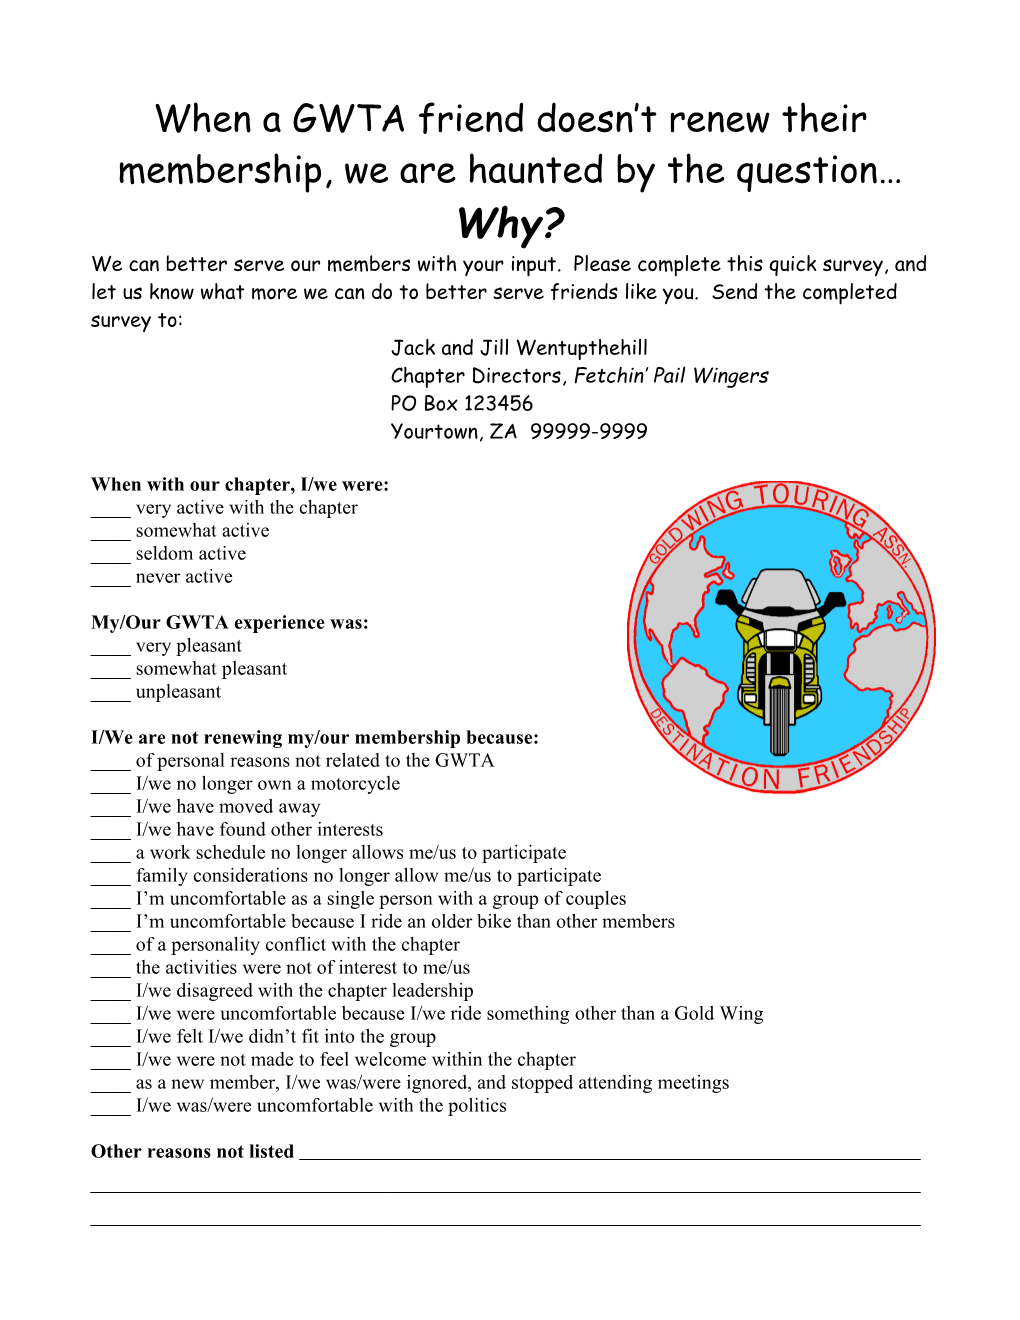 Membership in The